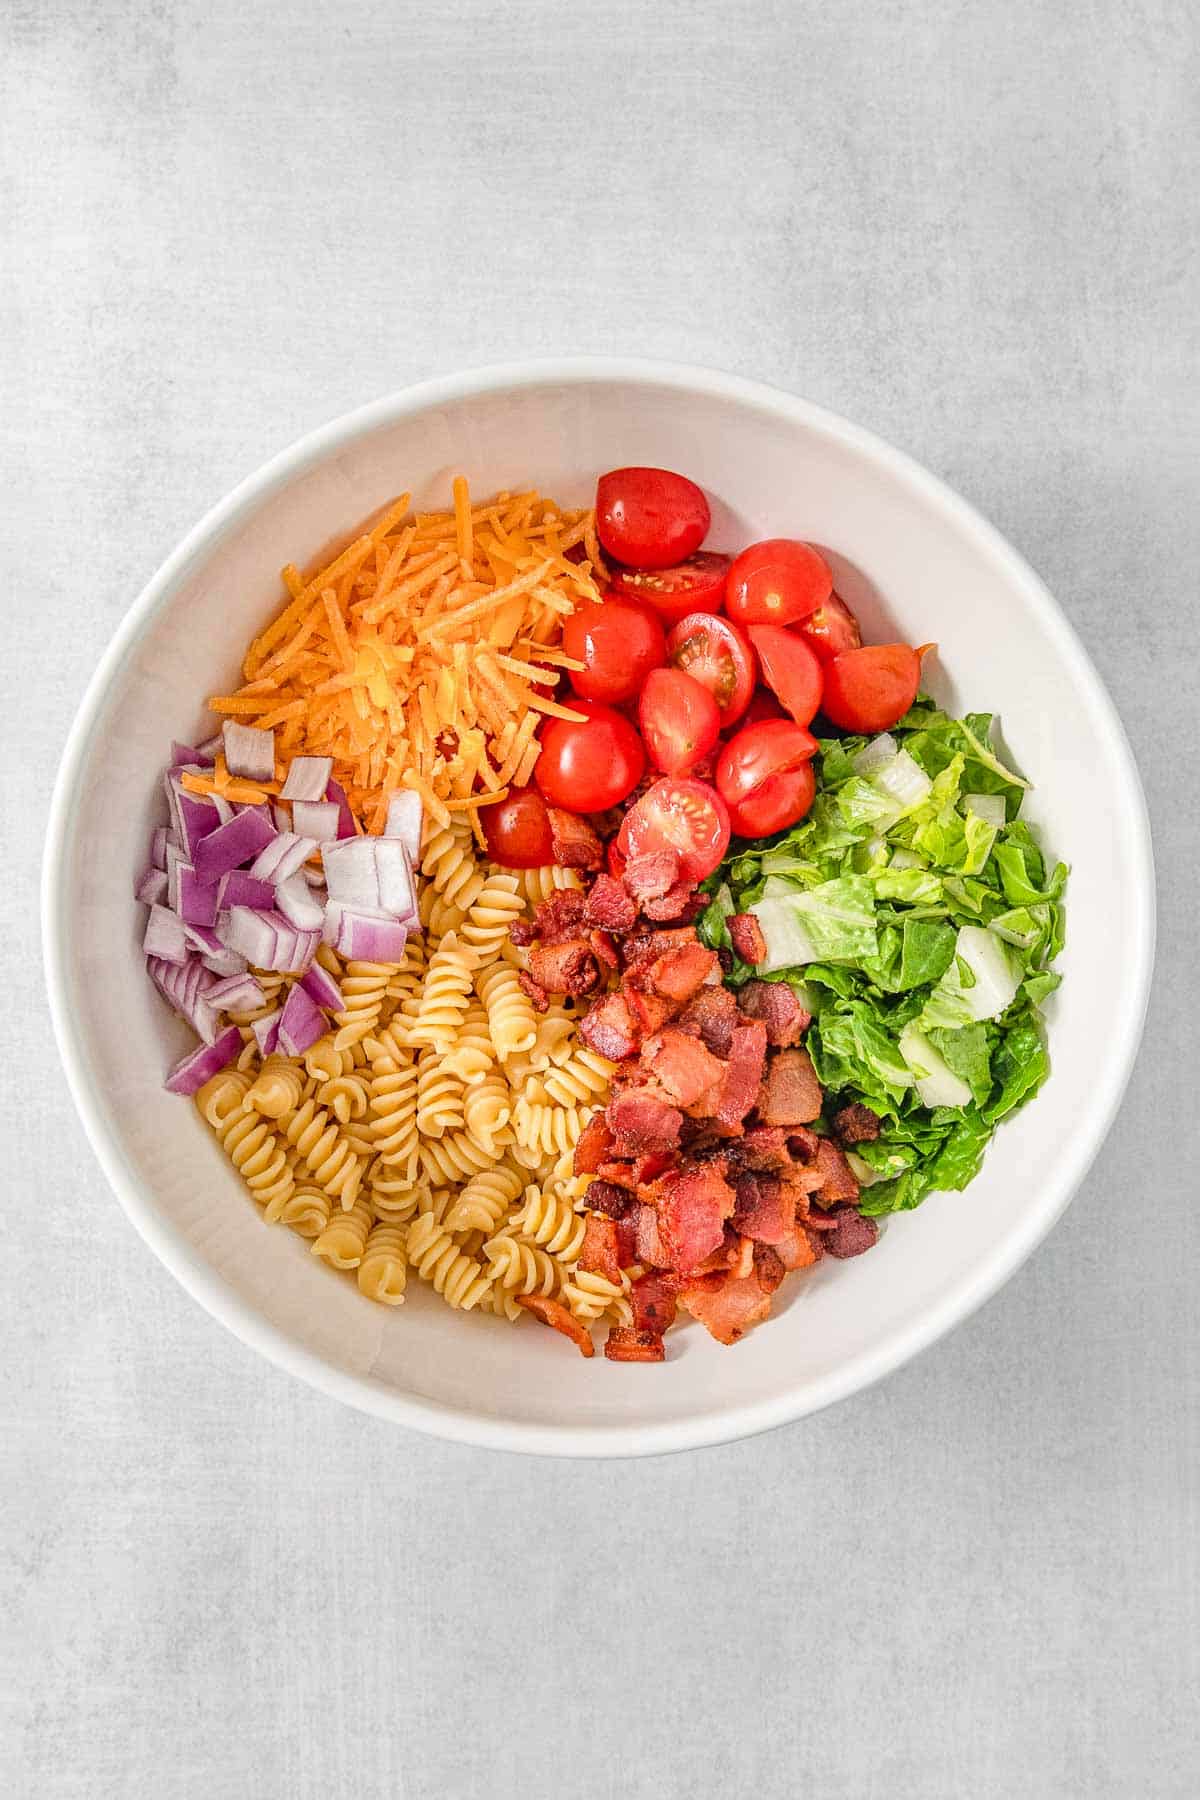 Pasta salad ingredients added to large white mixing bowl.